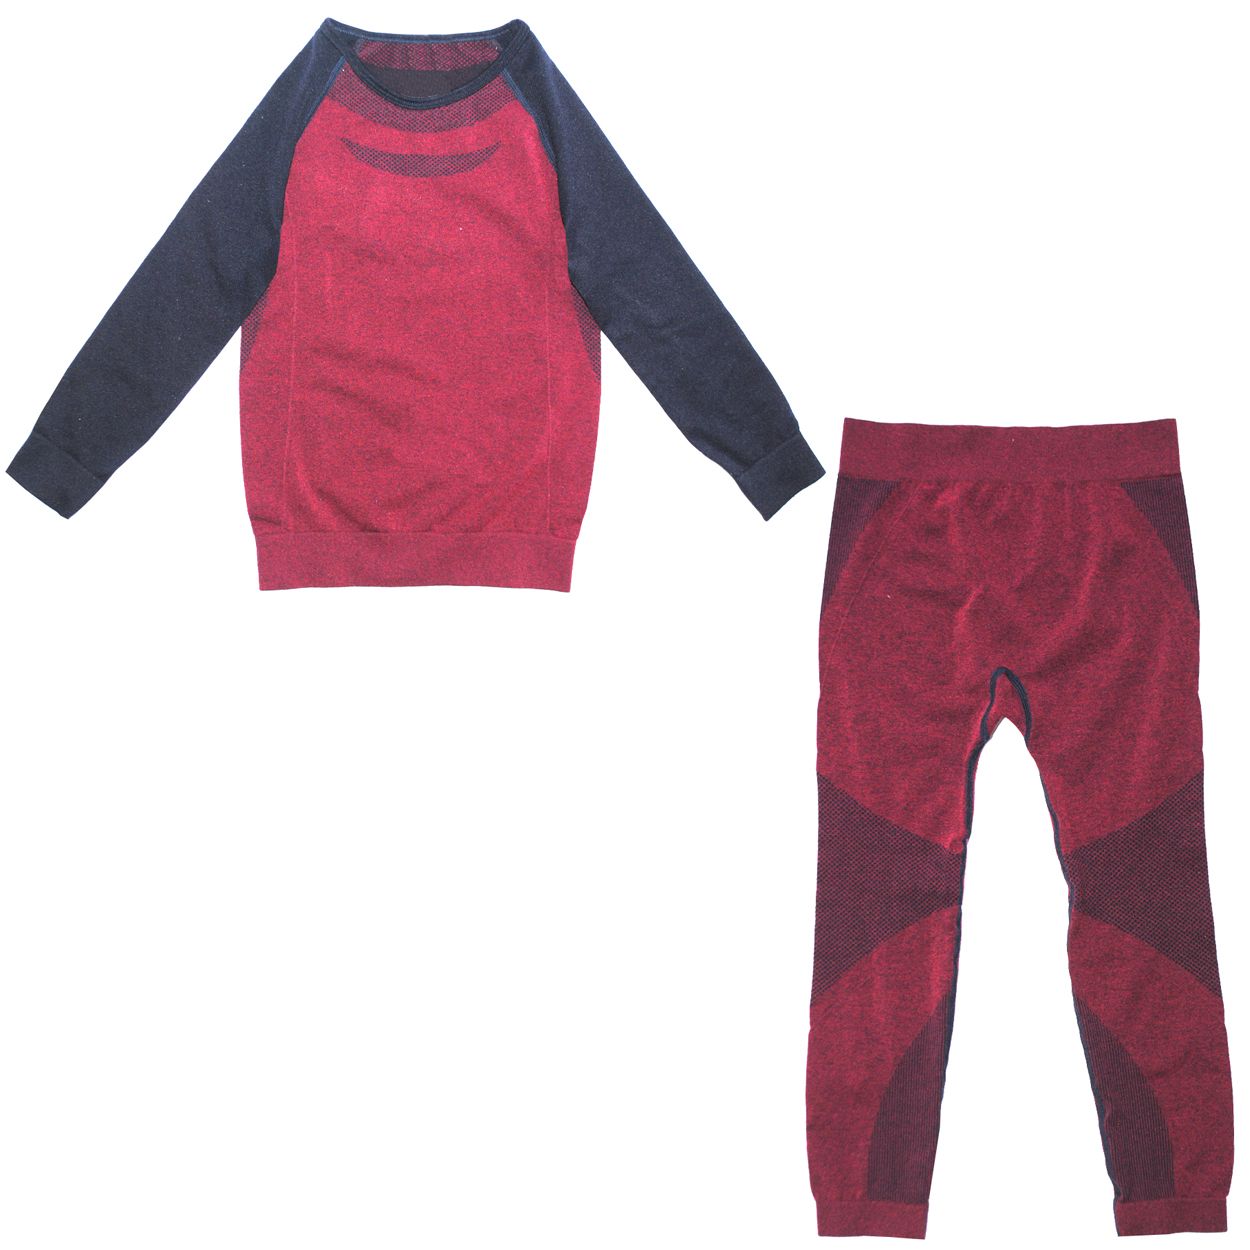 ست تی شرت و لگینگ ورزشی دخترانه لوپیلو مدل 2034616 -  - 1